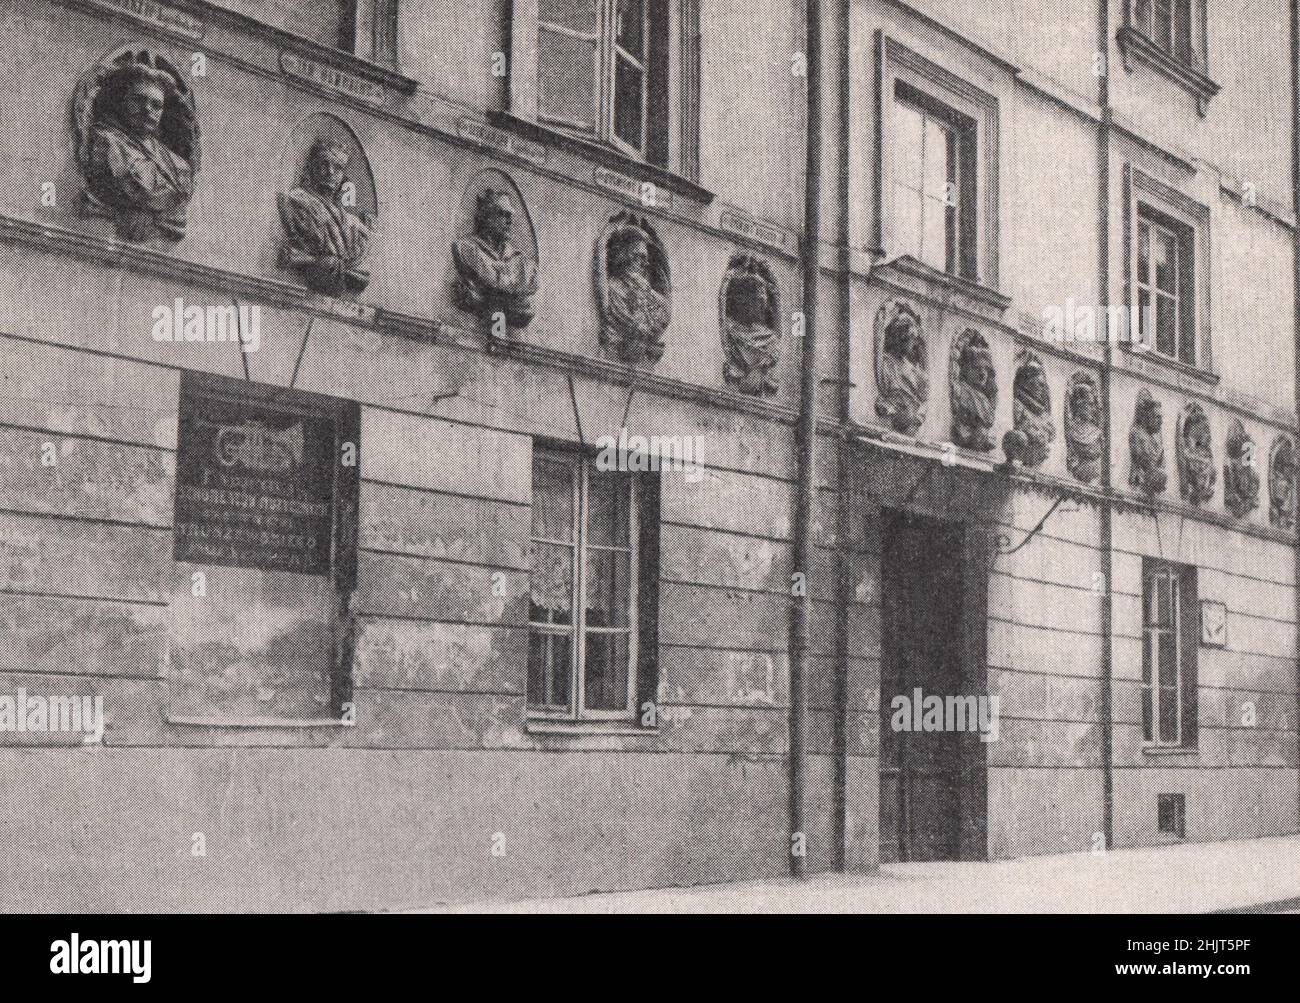 Portraits de médaillons des rois de Pologne sur une maison de Varsovie (1923) Banque D'Images